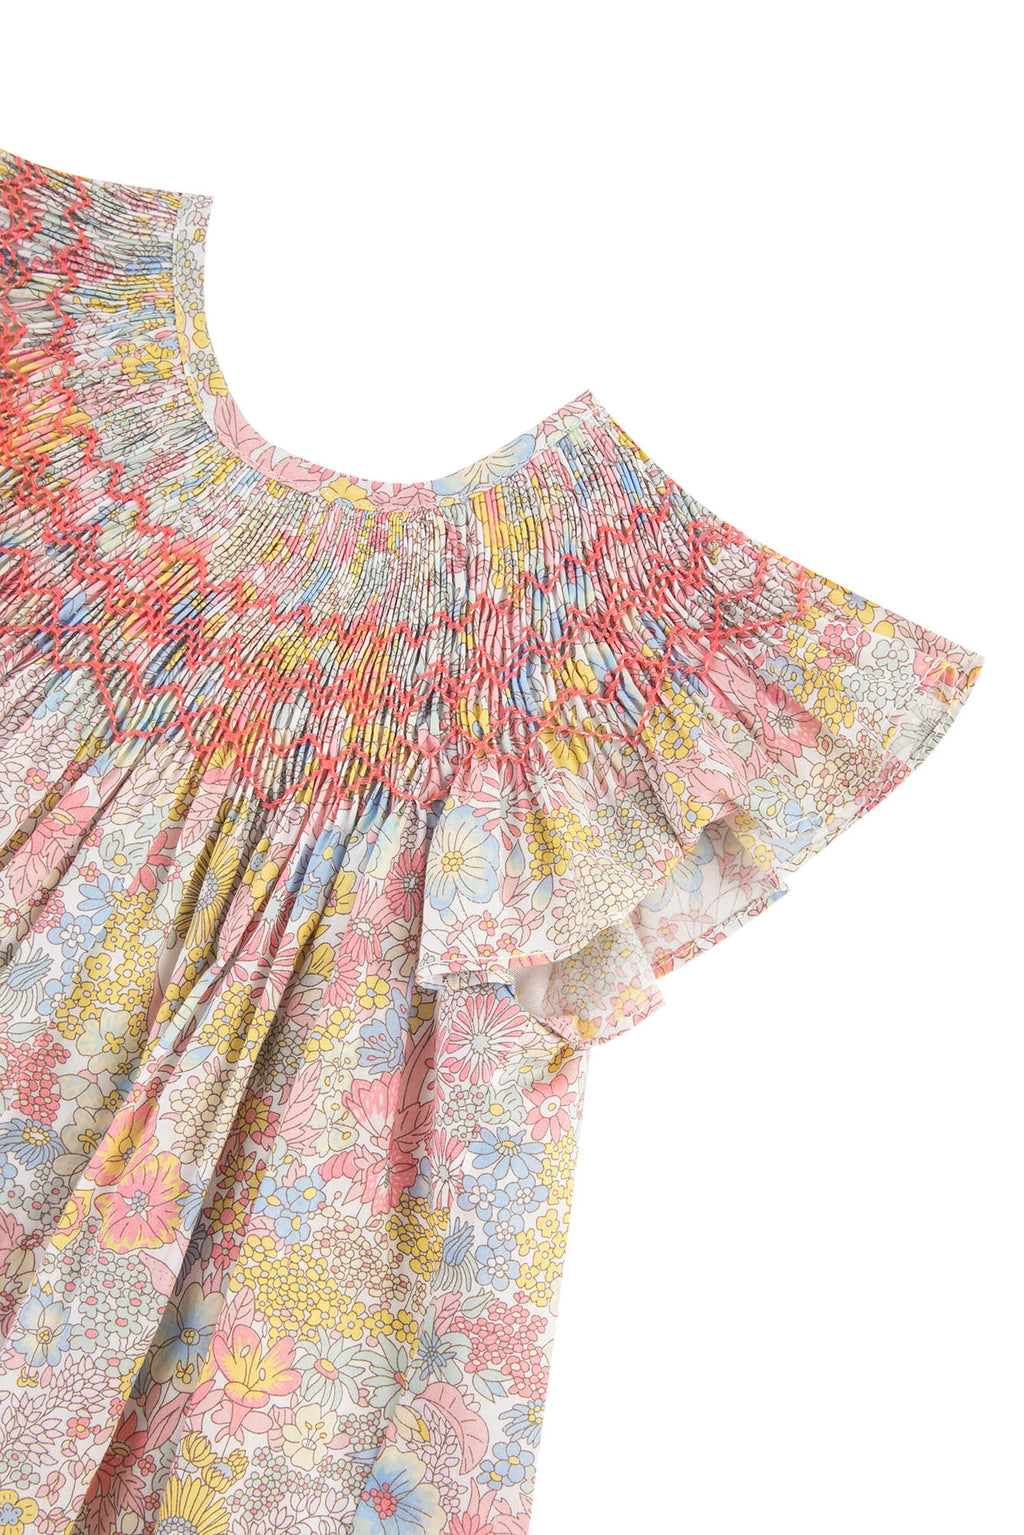 Dress - Fabric Liberty mimosa